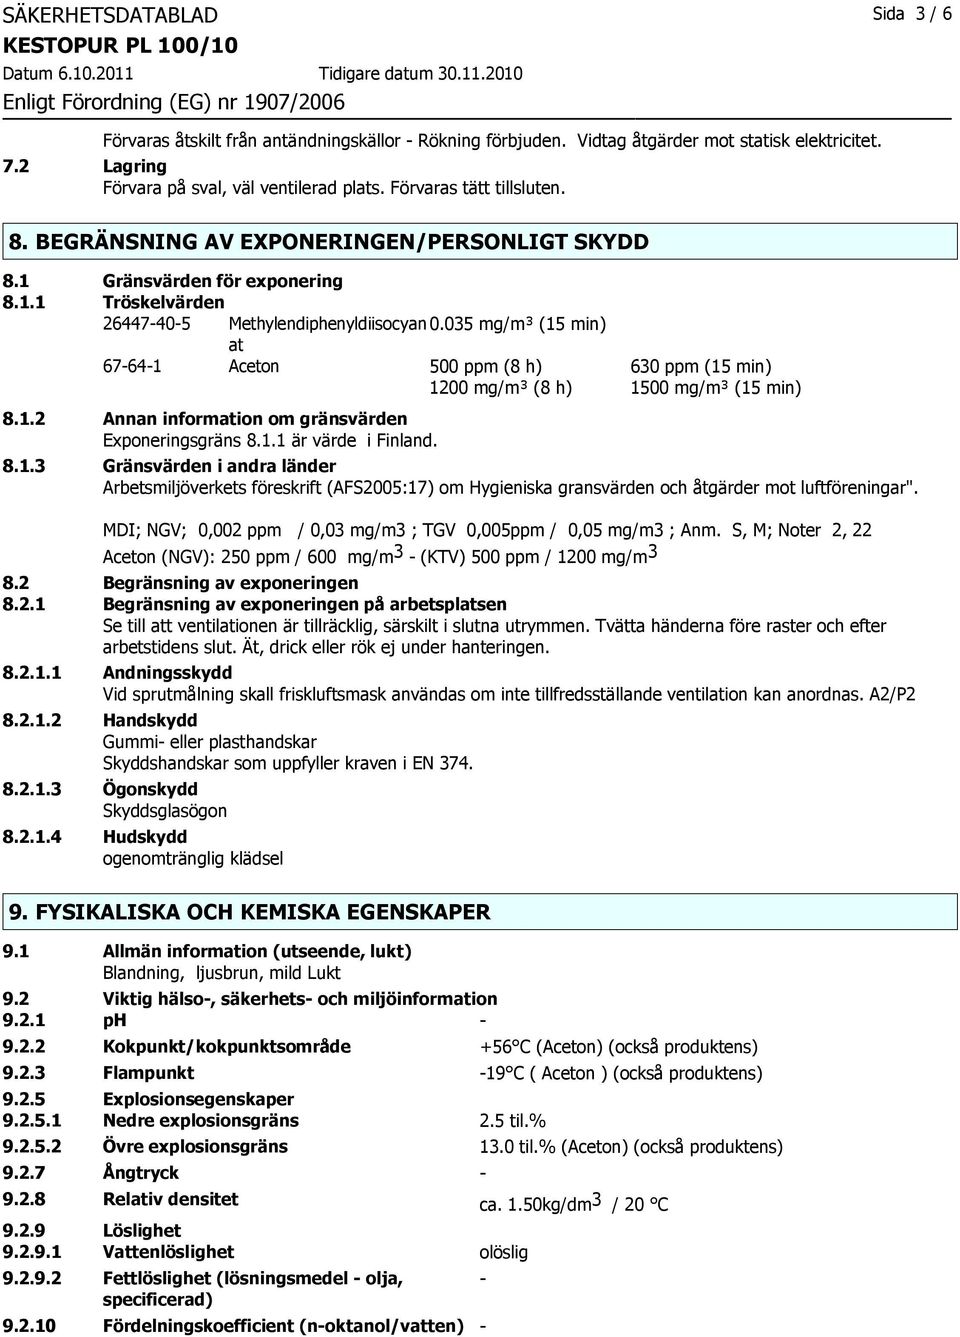 035 mg/m³ (15 min) at 67-64-1 Aceton 500 ppm (8 h) 630 ppm (15 min) 1200 mg/m³ (8 h) 1500 mg/m³ (15 min) 8.1.2 Annan information om gränsvärden Exponeringsgräns 8.1.1 är värde i Finland. 8.1.3 Gränsvärden i andra länder Arbetsmiljöverkets föreskrift (AFS2005:17) om Hygieniska gransvärden och åtgärder mot luftföreningar".